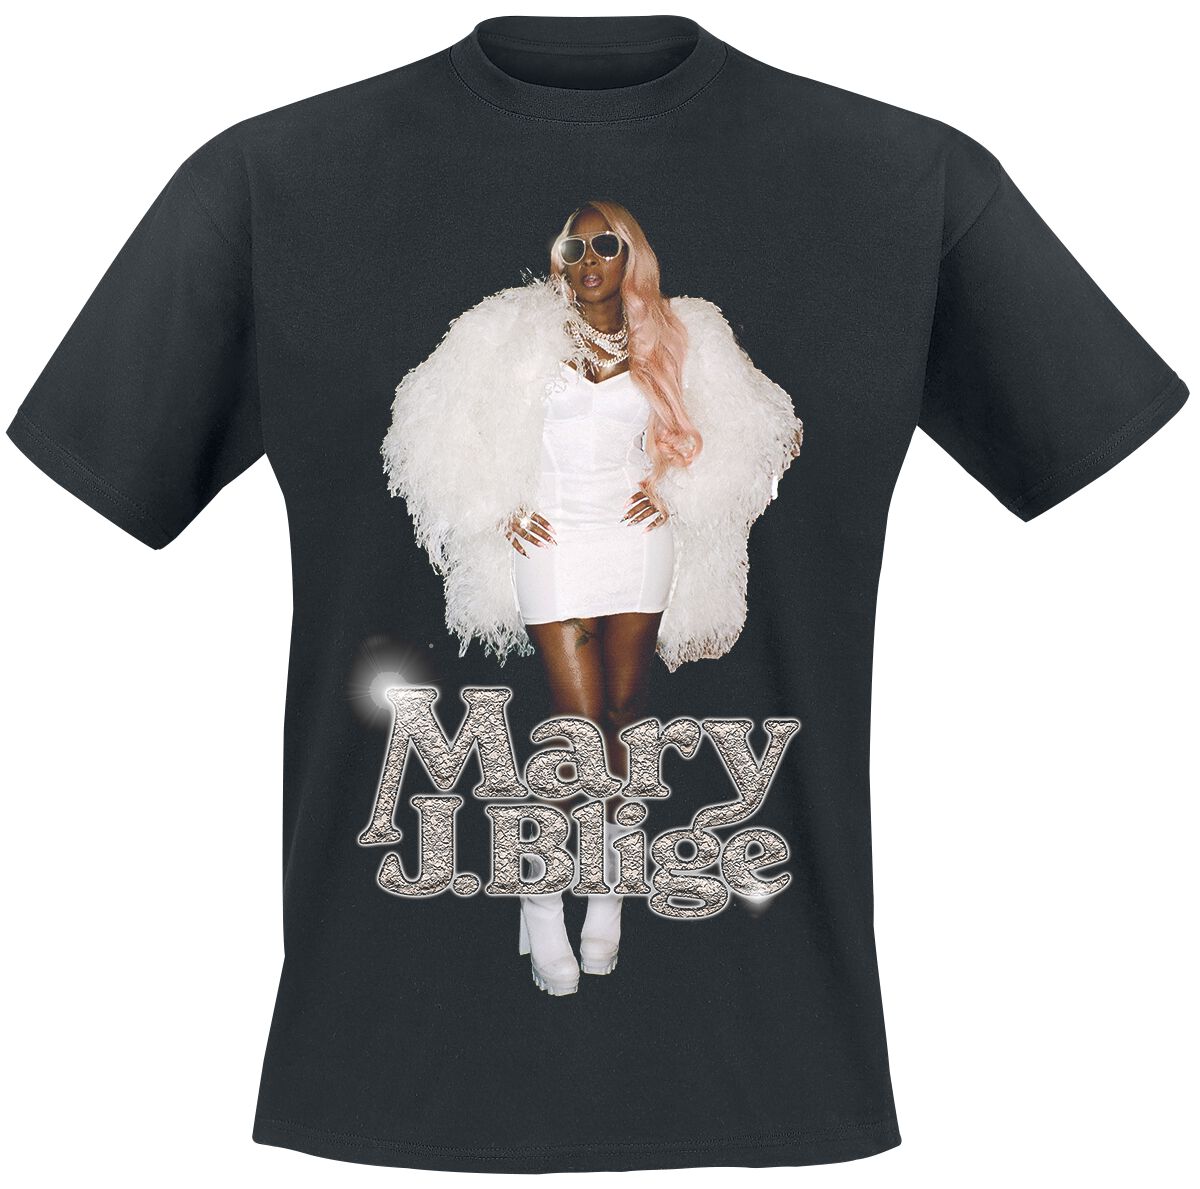 Mary J. Blige T-Shirt - Photo Glossy - S bis 3XL - für Männer - Größe XL - schwarz  - Lizenziertes Merchandise!